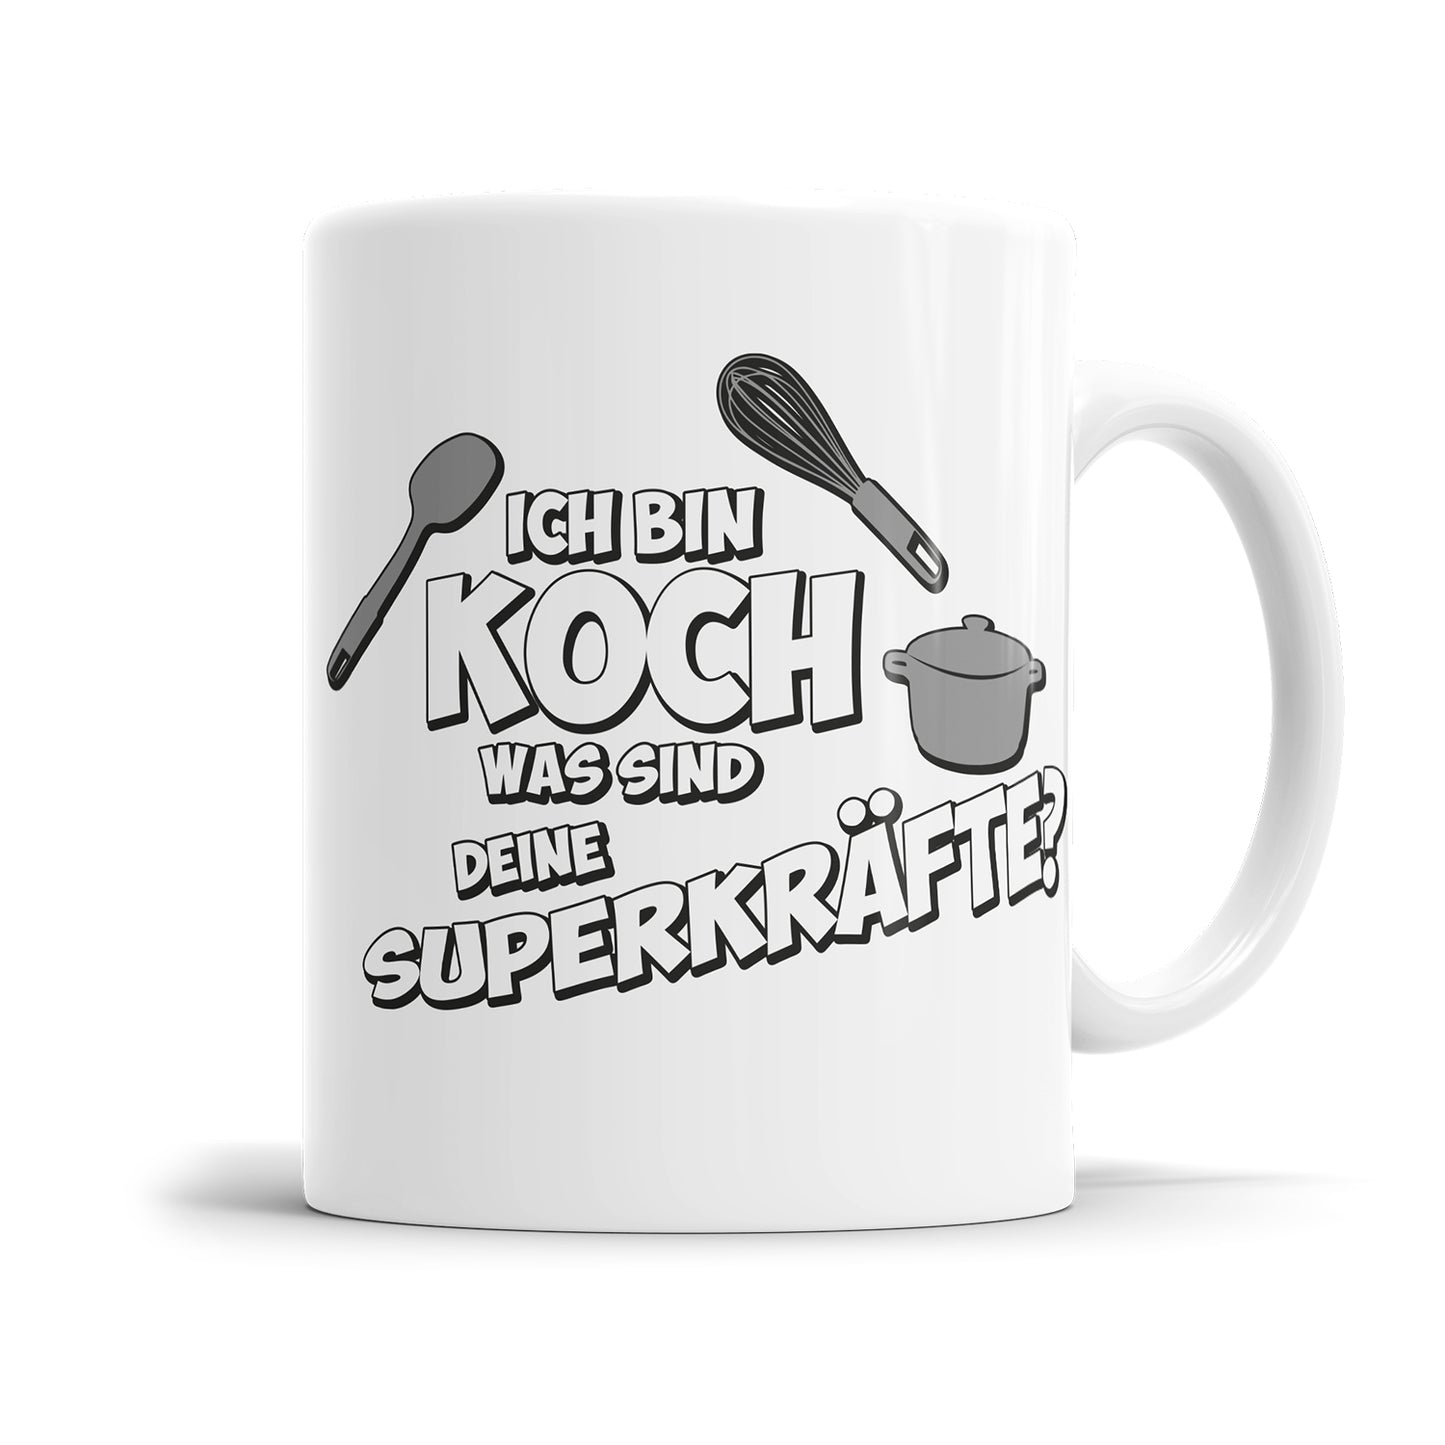 Koch Tasse - Ich bin Koch was sind deine Superkräfte?